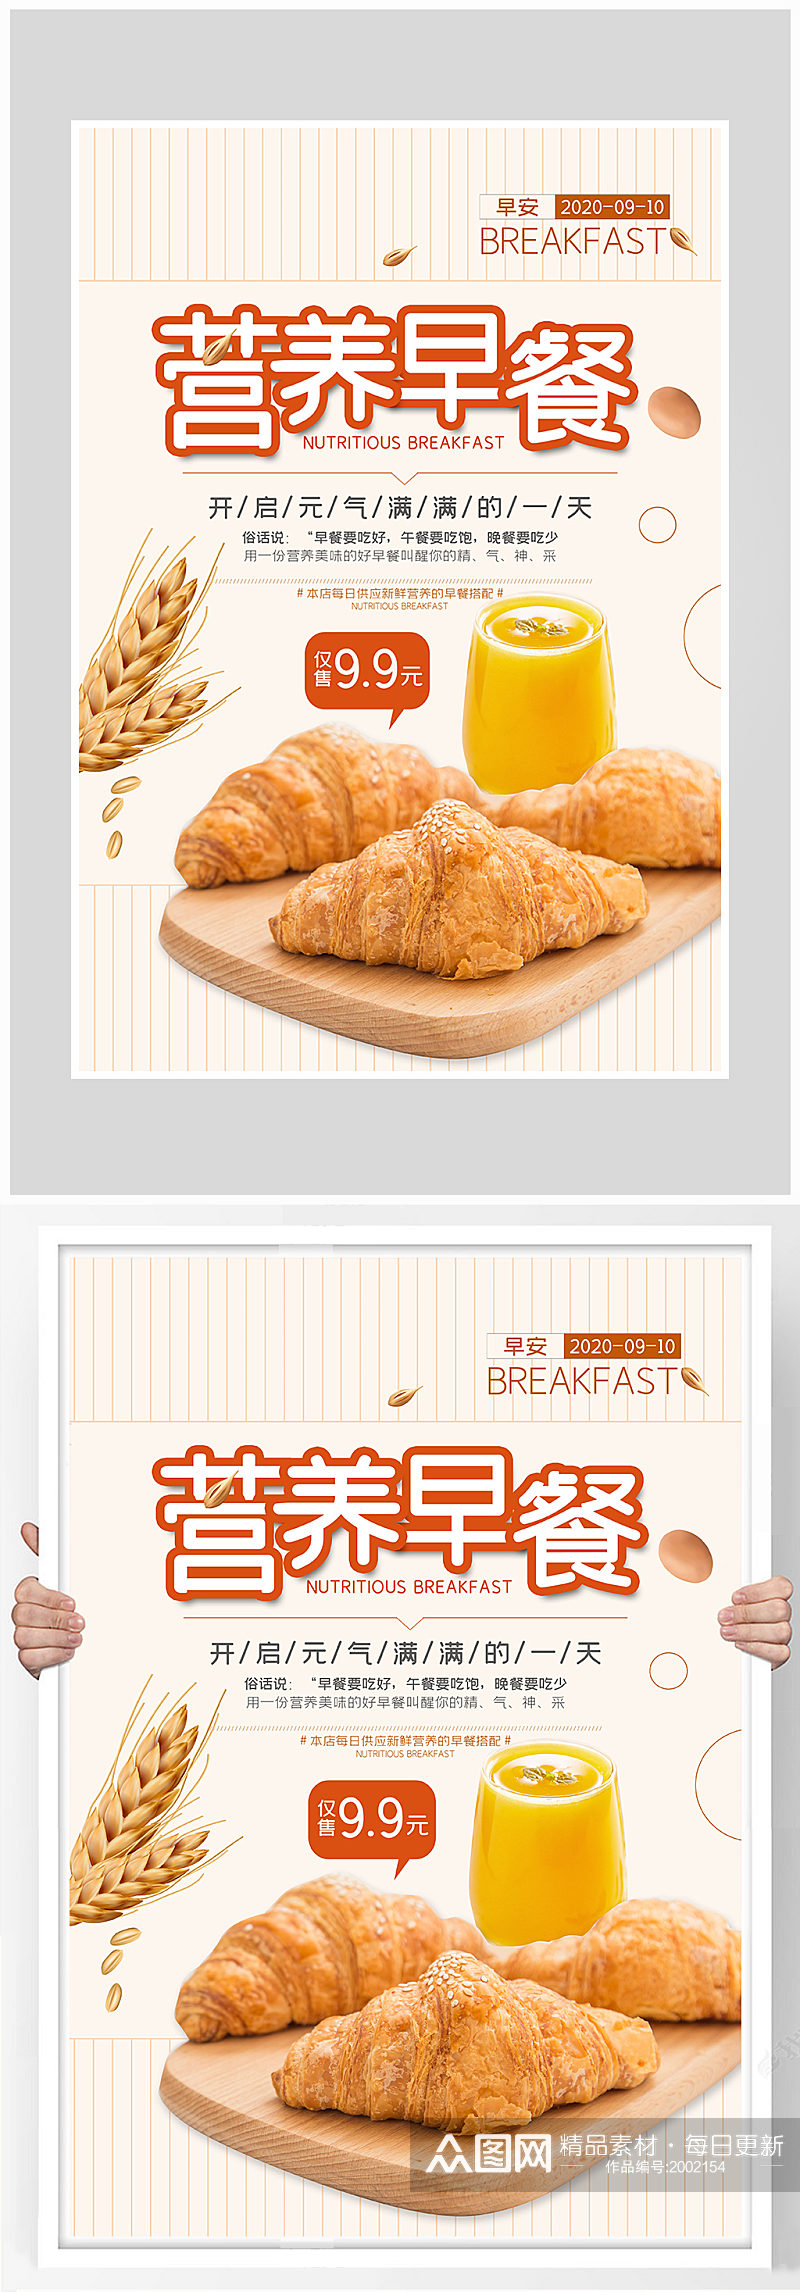 创意质感营养早餐面点海报设计素材